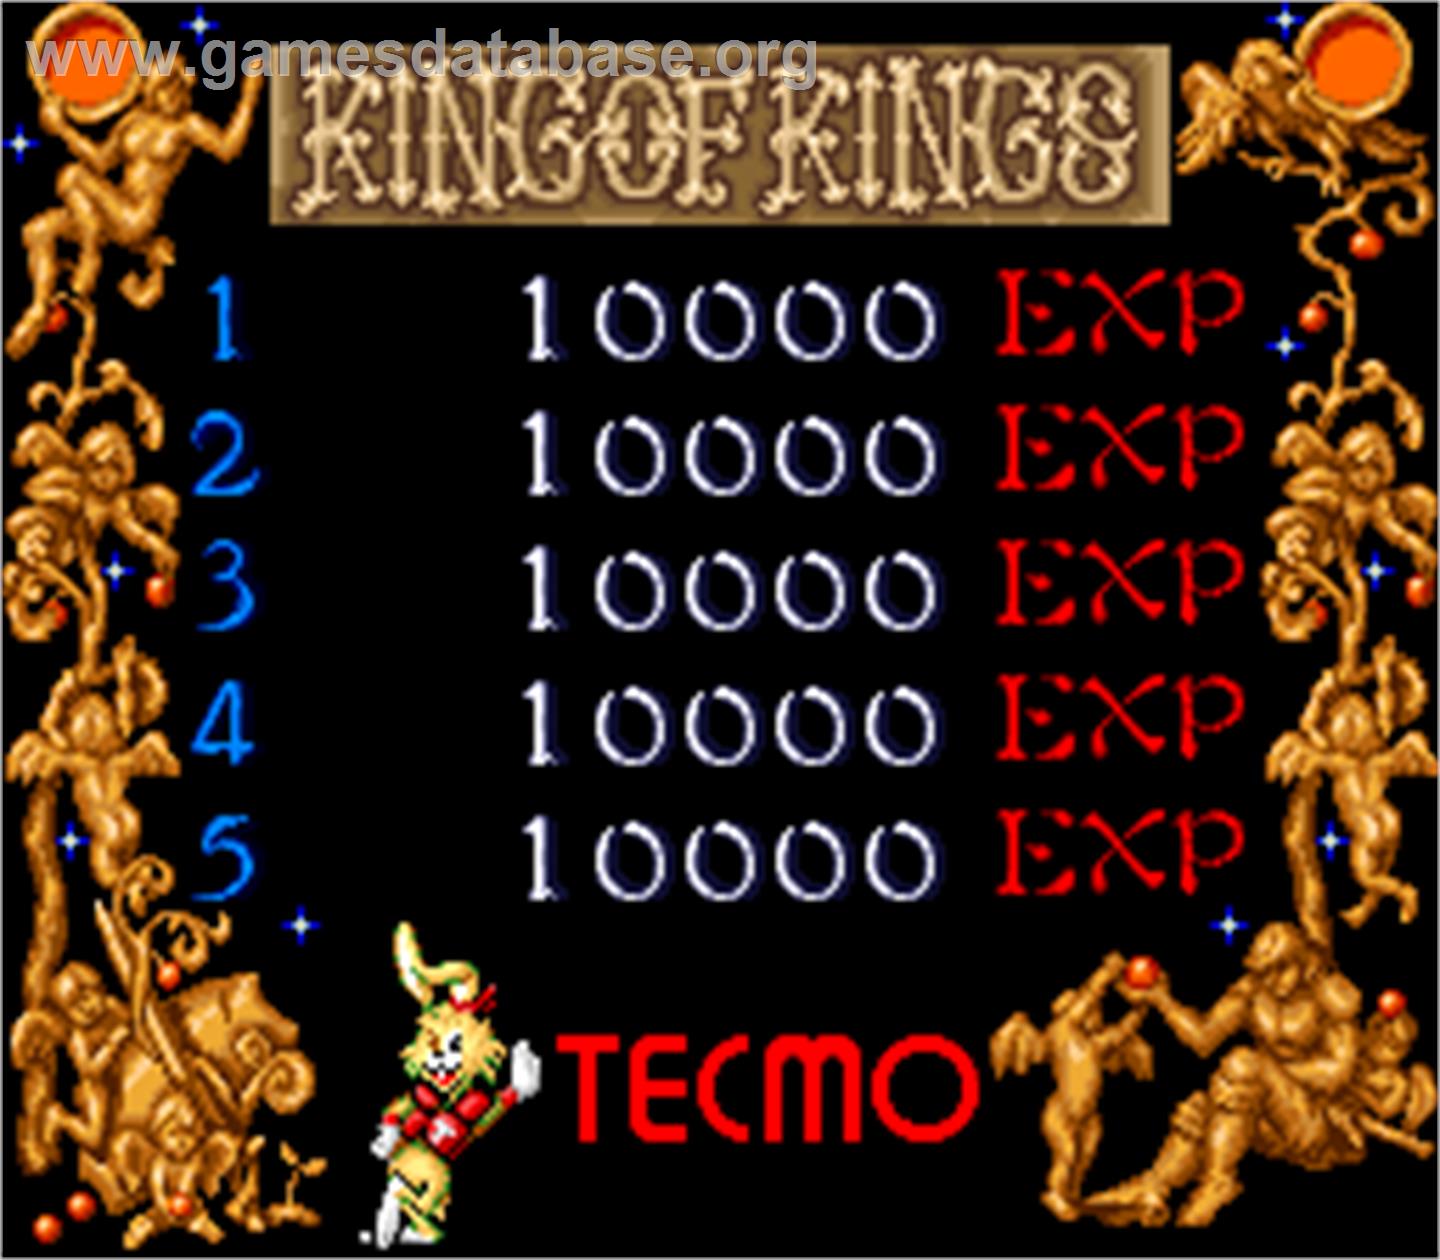 Wild Fang - Arcade - Artwork - High Score Screen